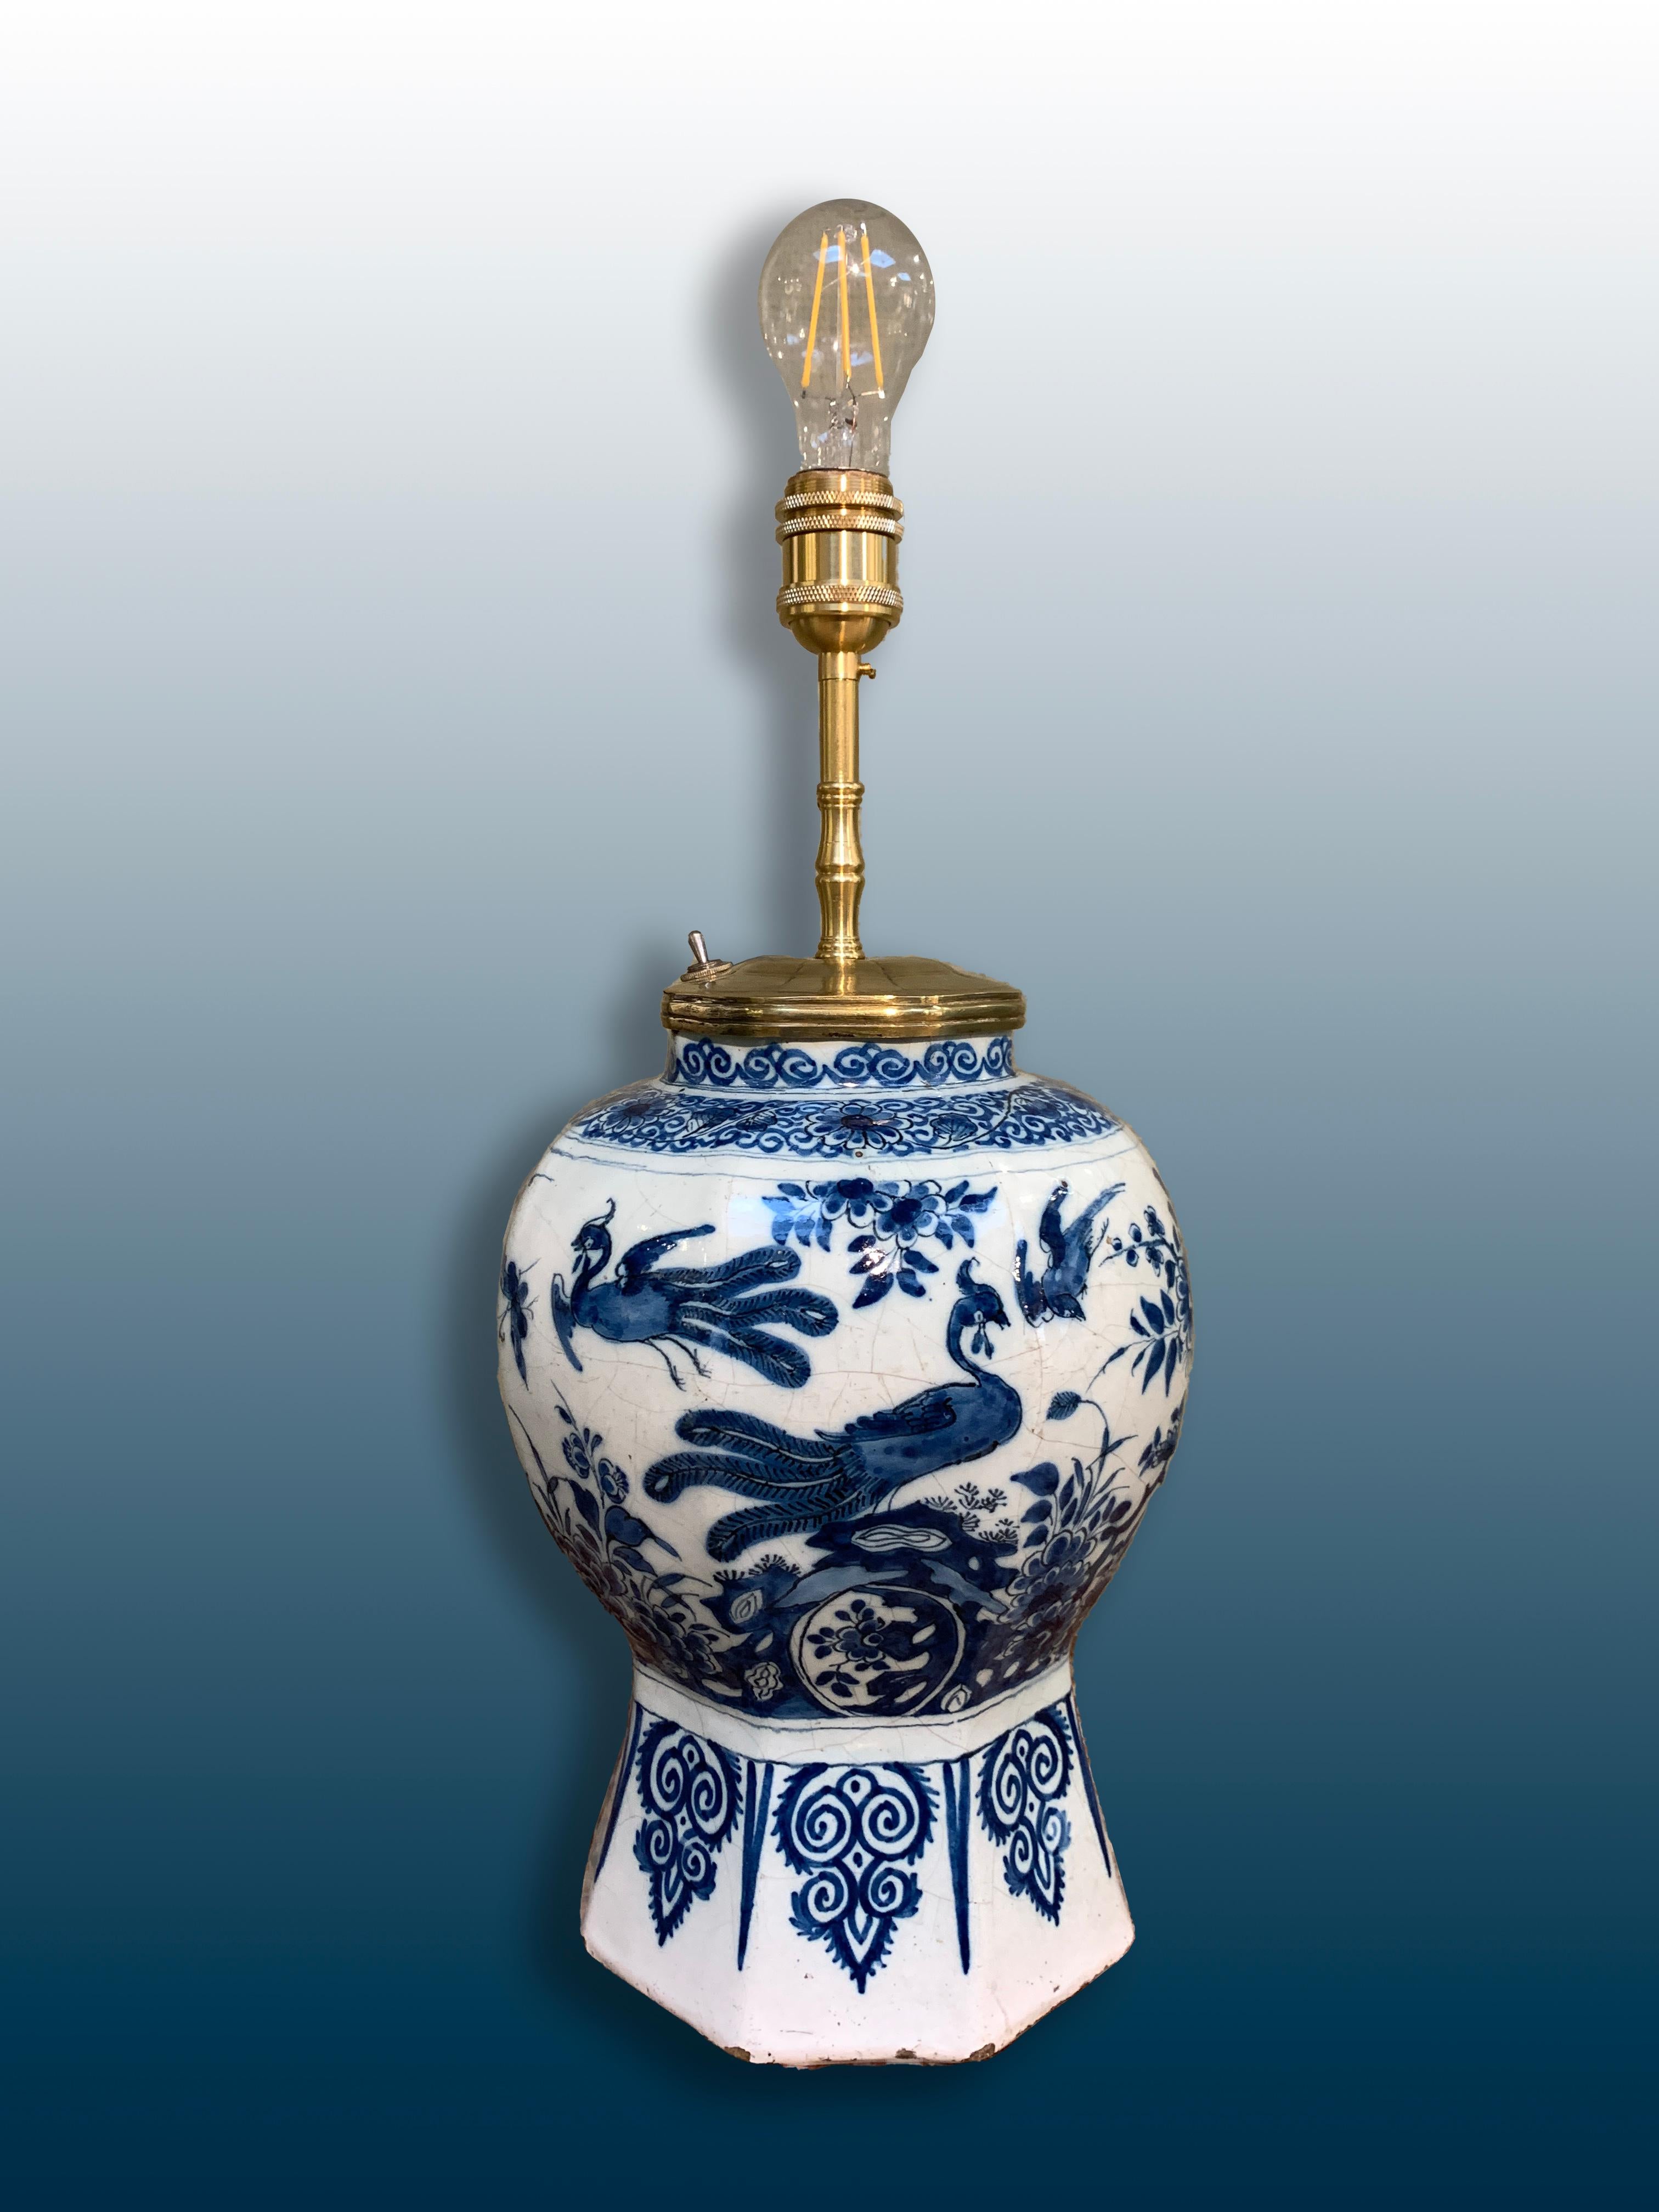 Un beau vase en faïence hollandais à décor de chinoiseries transformé en lampe.

Origine : Delft, Pays-Bas
Date : vers 1720
Atelier : Inconnu.

Cette lampe en faïence hollandaise du XVIIIe siècle est peinte dans le style chinoiserie. La